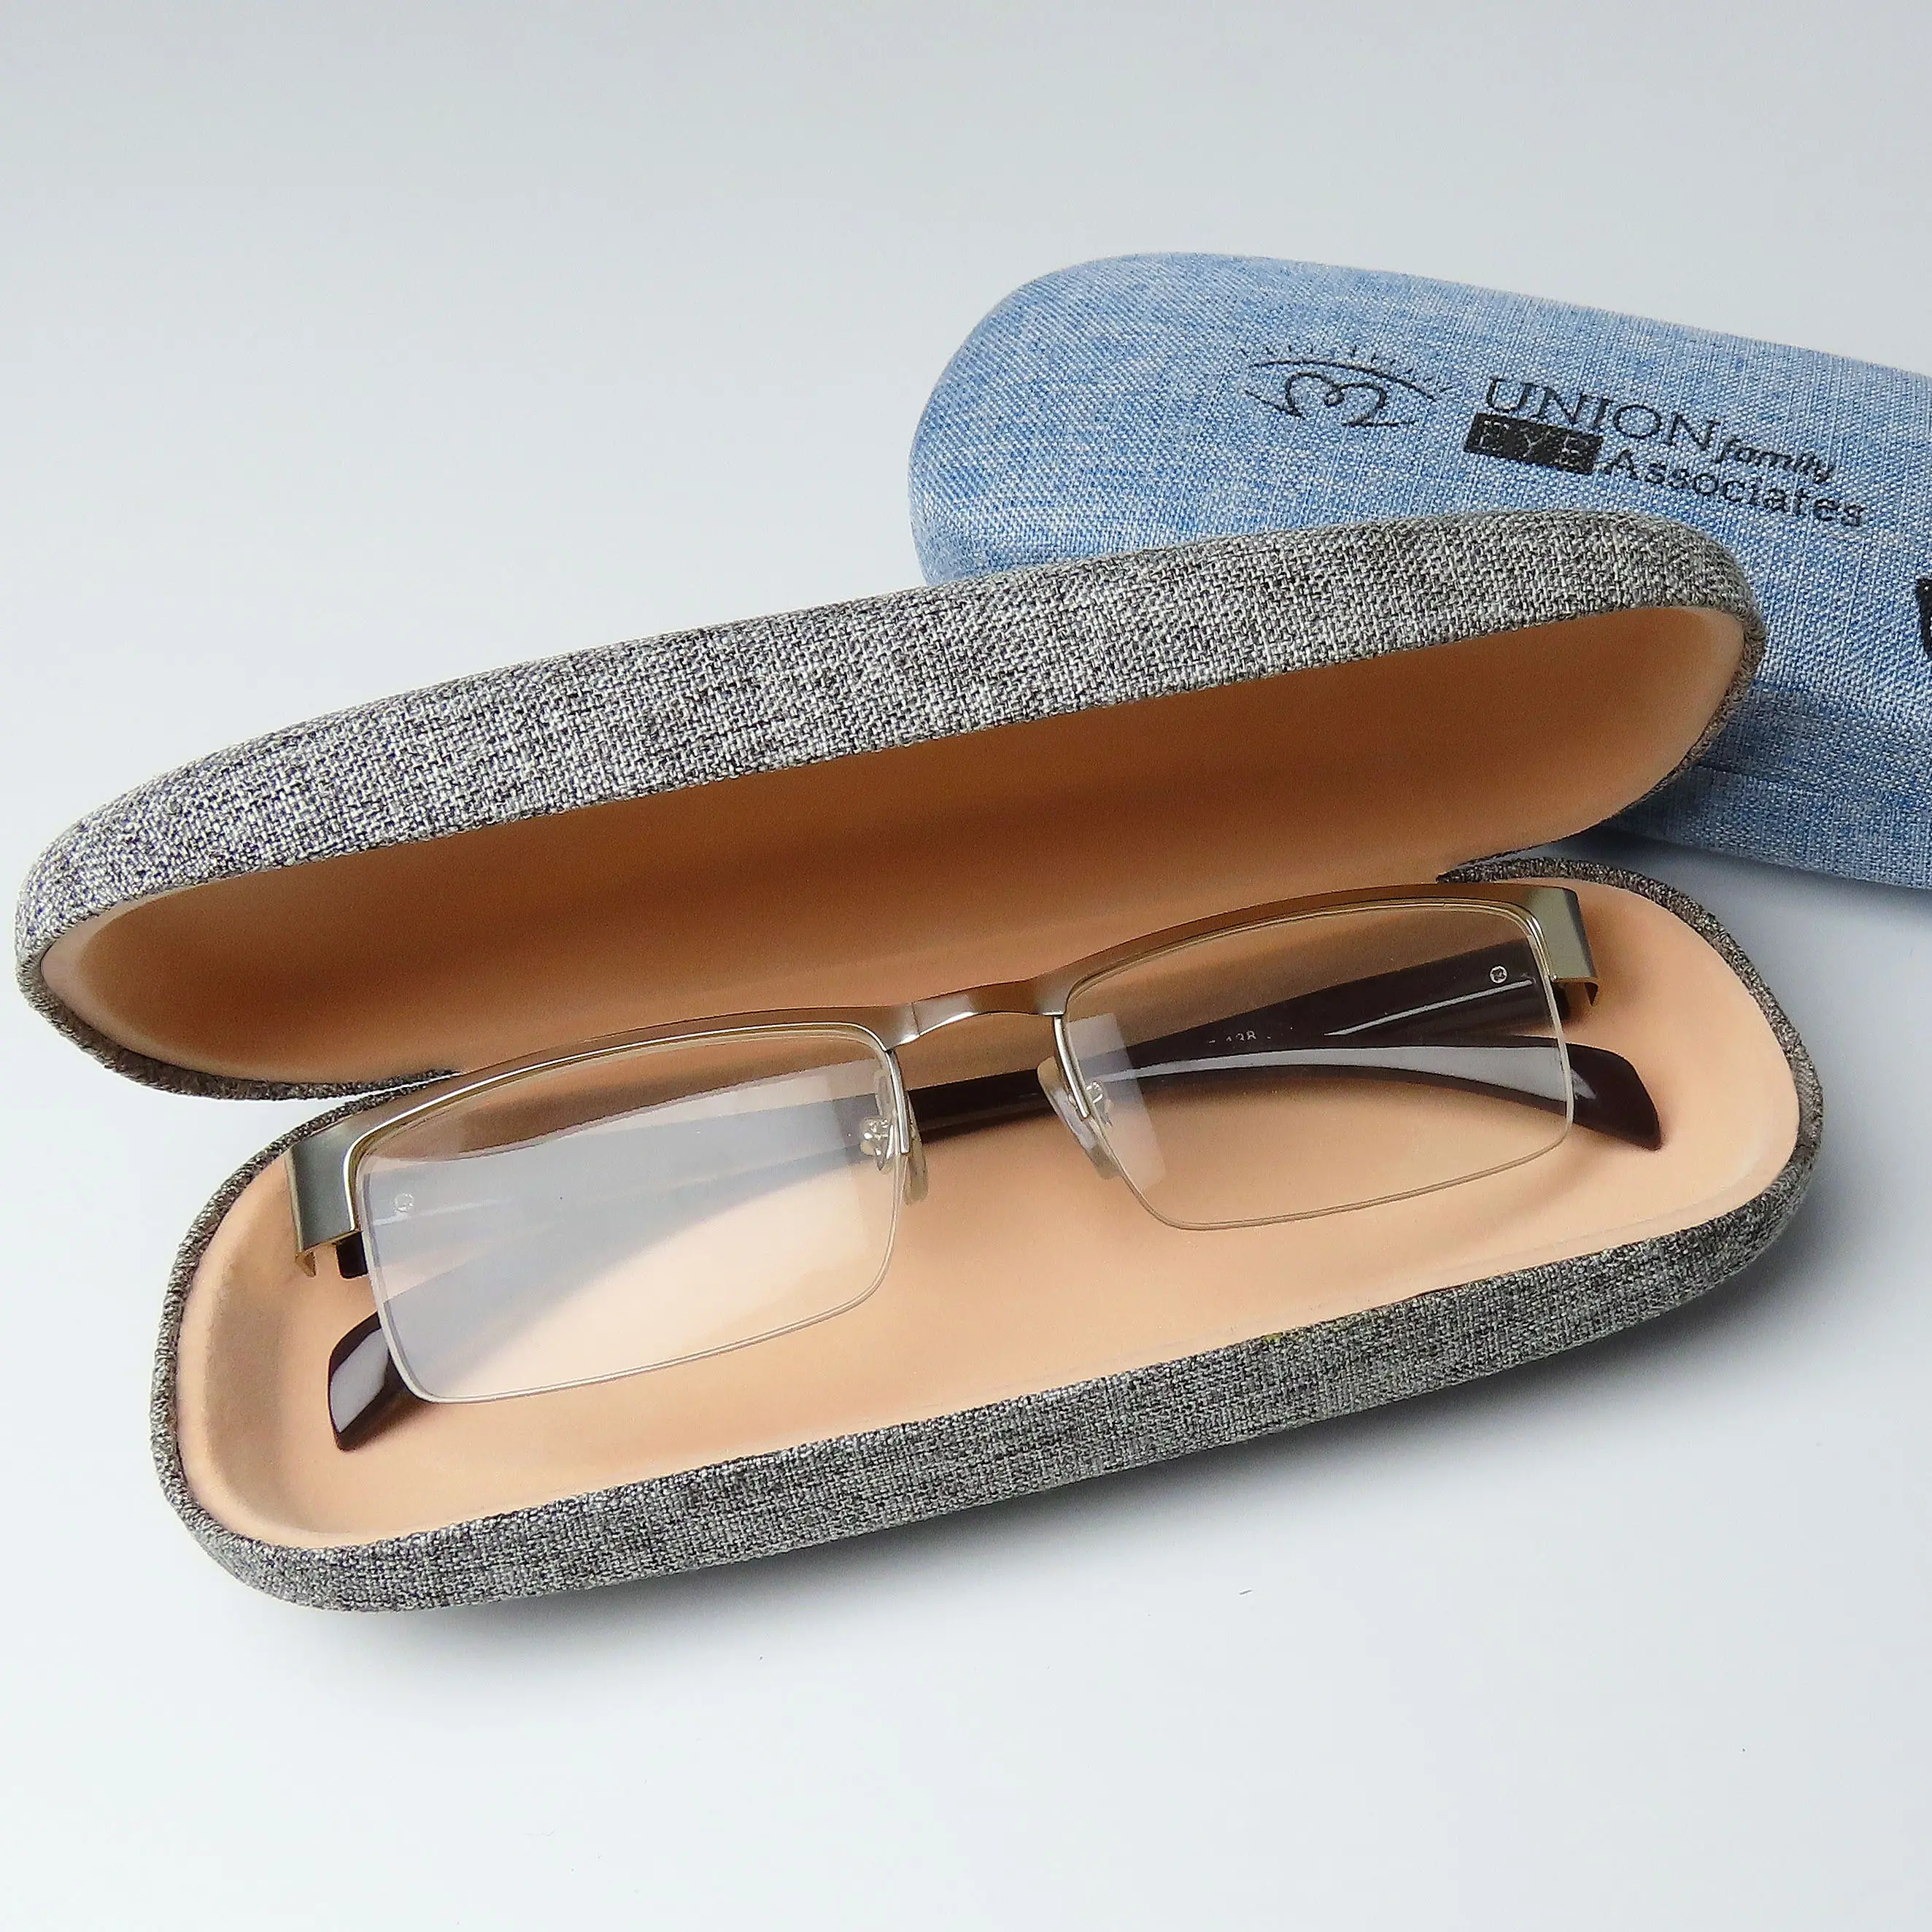 Toptan lüks keten gözlük sert okuma gözlüğü kılıfları keten gözlük gözlük optik depolama için özel kutu ambalaj